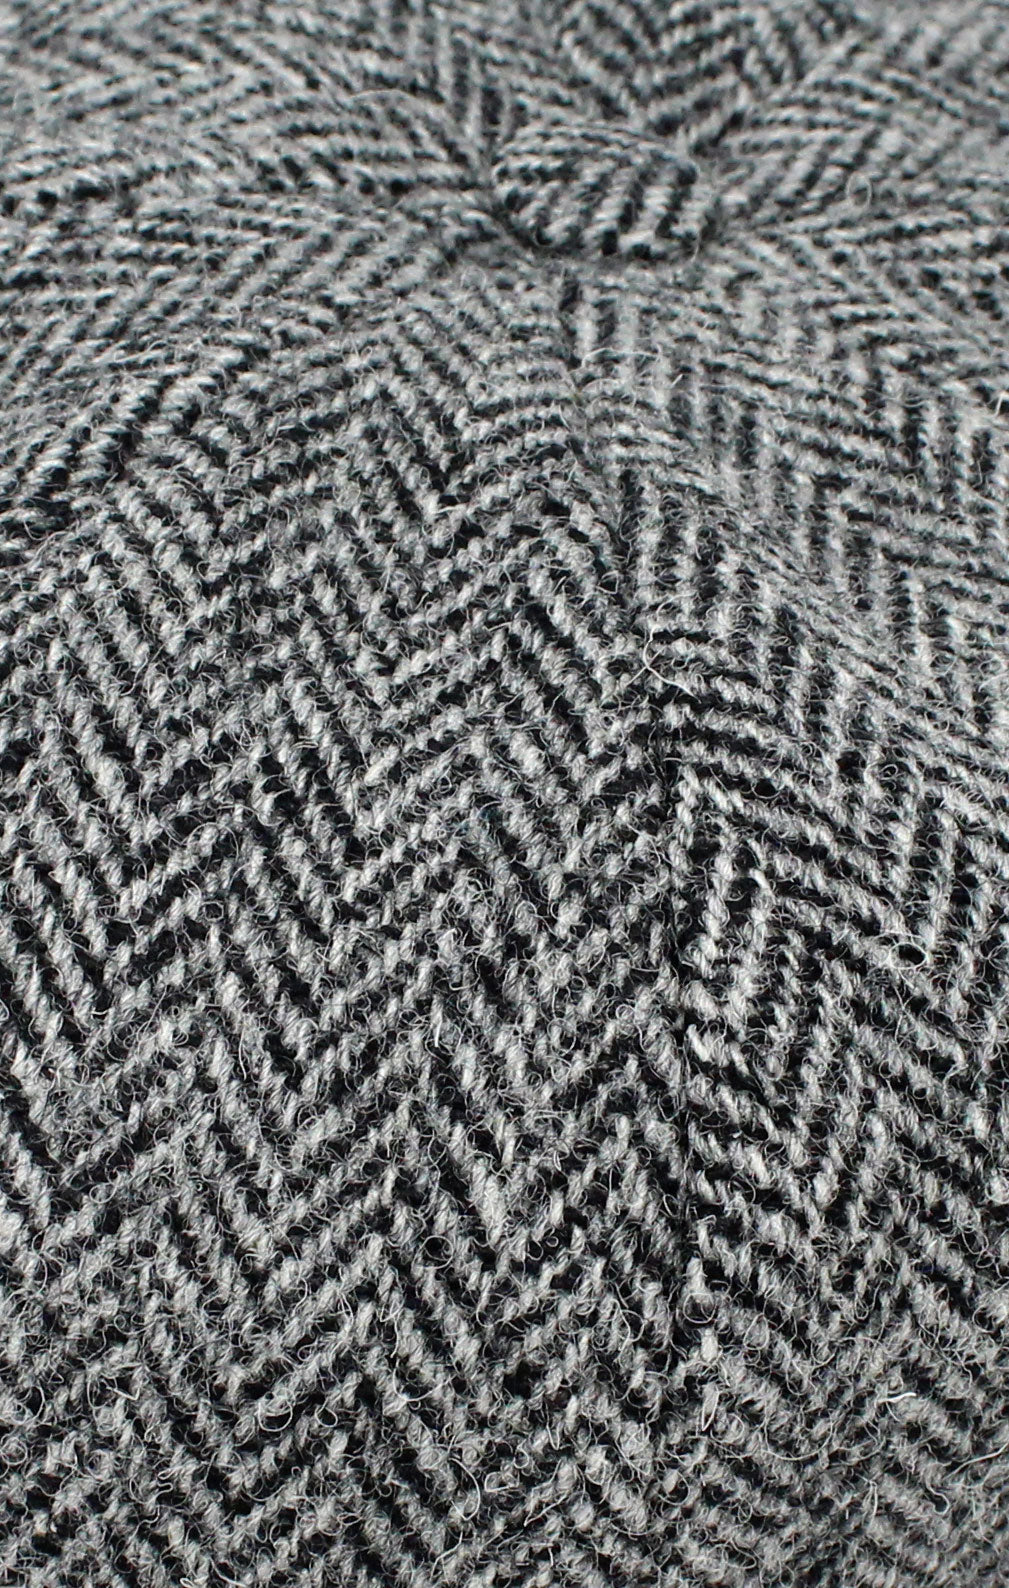 Colour; Black and Grey herringbone tweed swatch